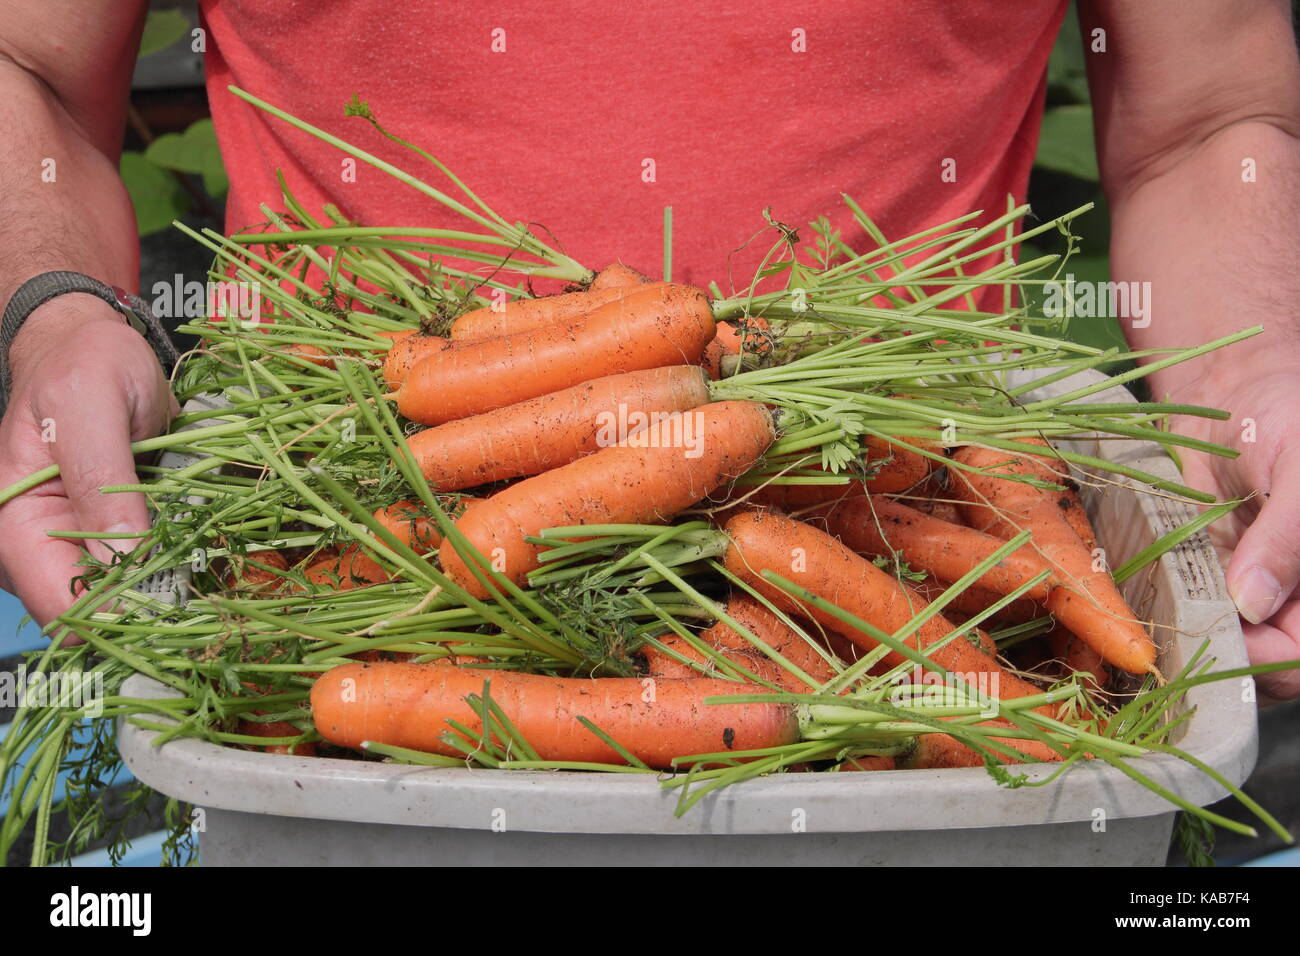 Home Grown fraîchement récolté 'Nairobi' variété les carottes sont effectuées par un jardinier dans le cadre d'un allotissement jardins en fin d'été (août), Royaume-Uni Banque D'Images